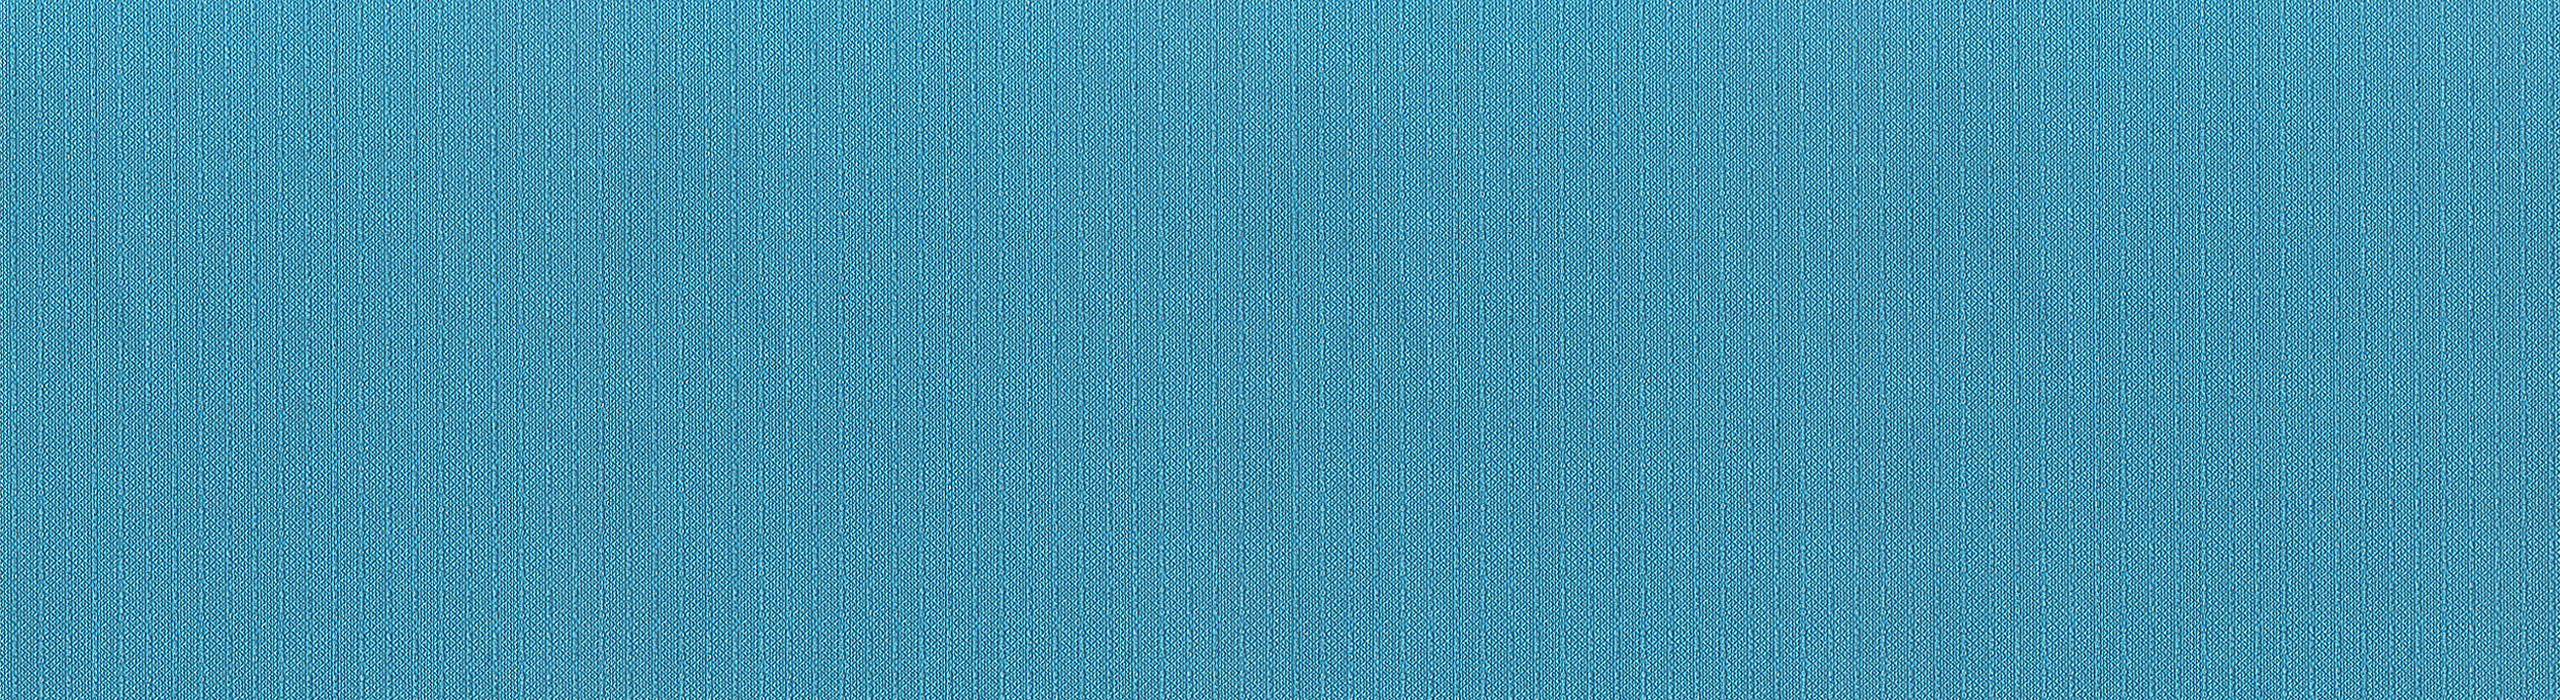 картинка 88292-4 Veluce 2018 Обои виниловые на бумажной основе 1.06*15.6 рисунок полоски цвет синий